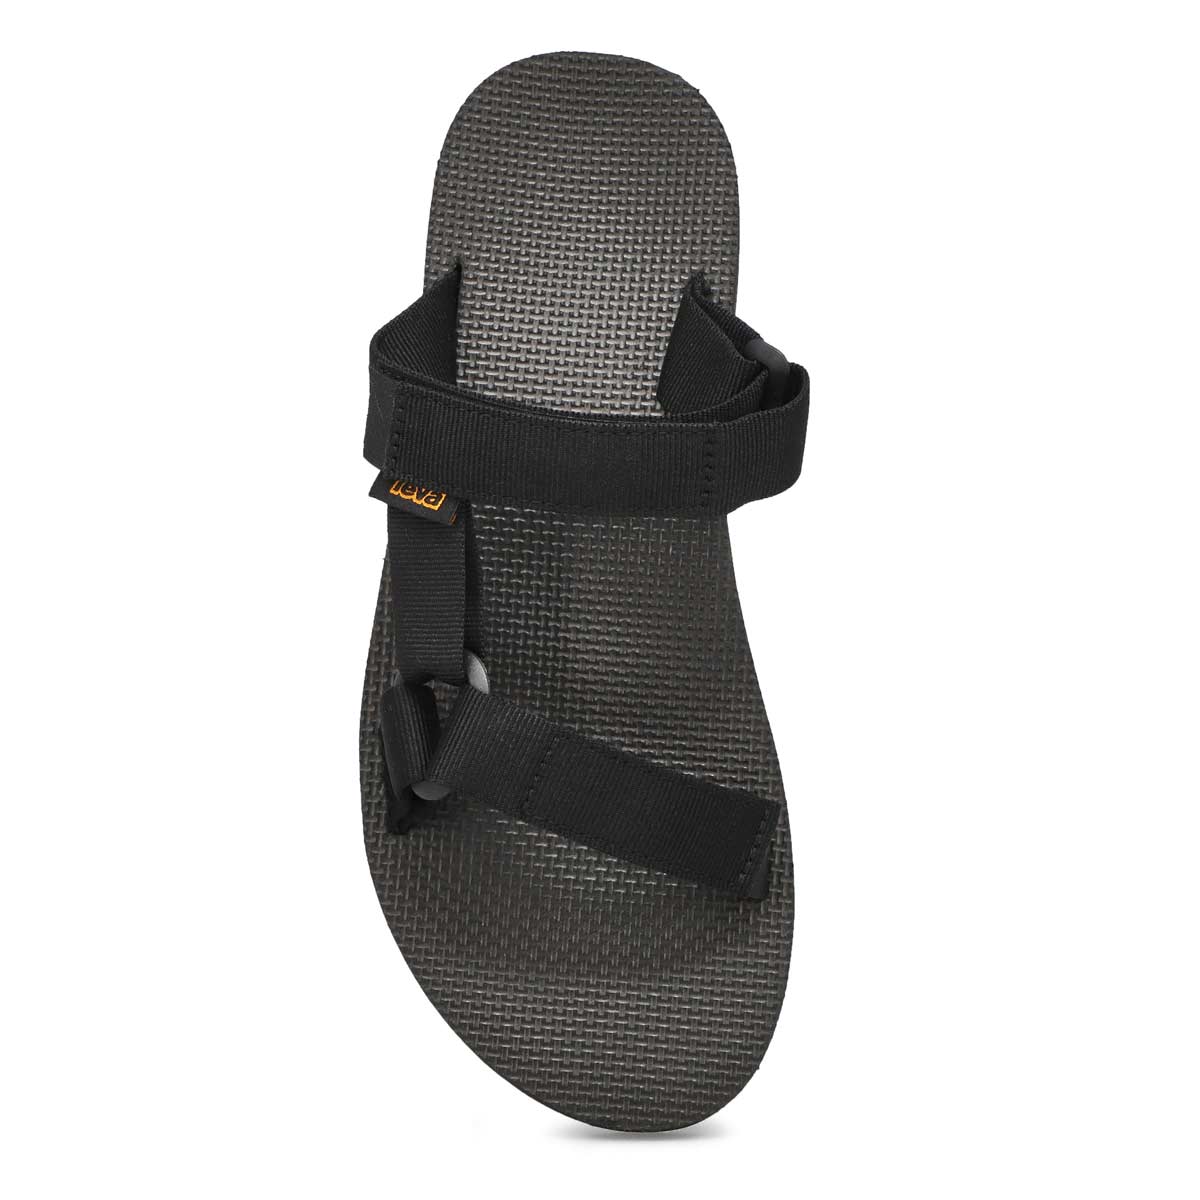 Men's Original Universal Slide Sandal - Black